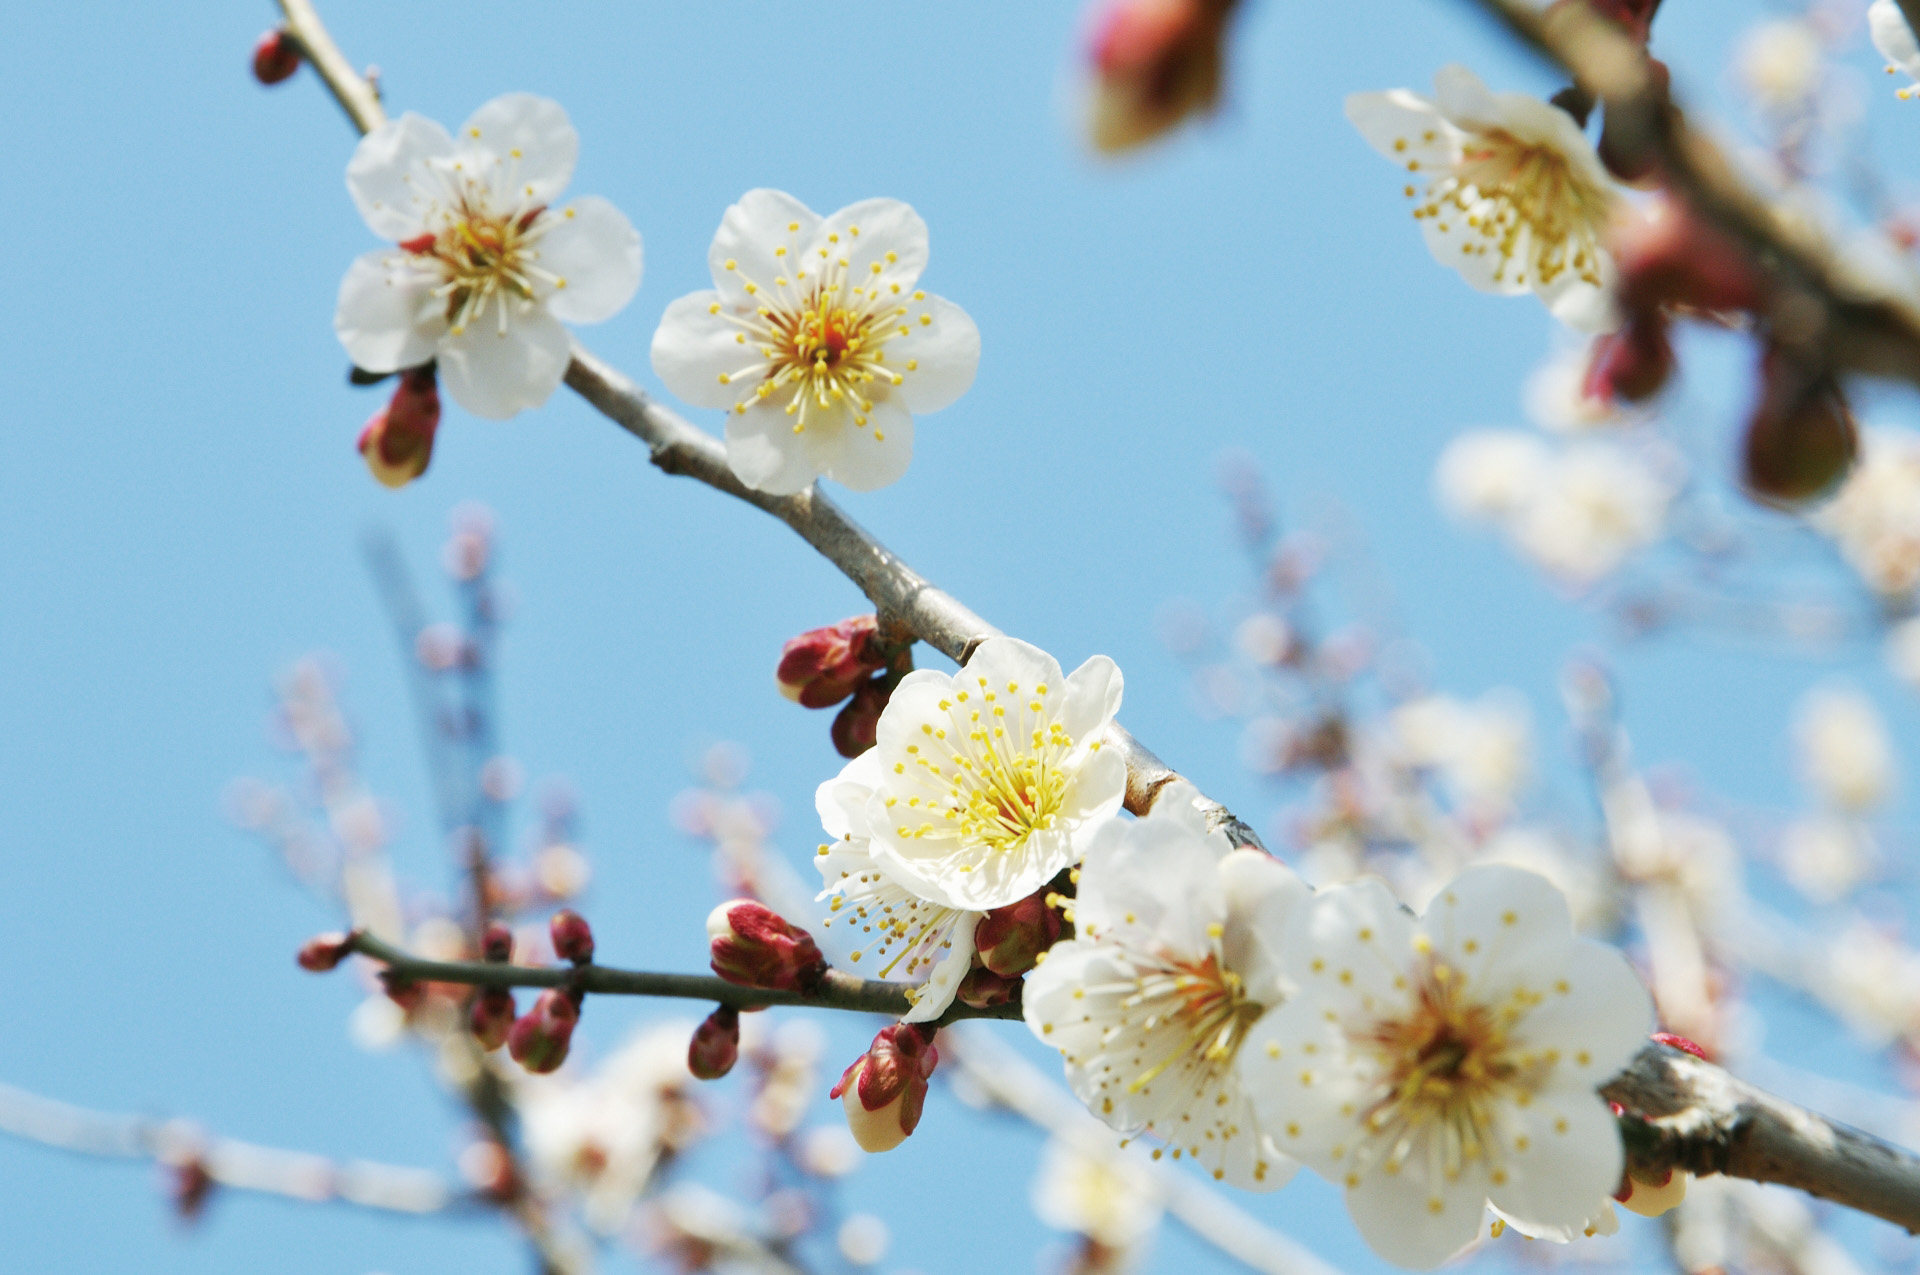 春を知らせる梅の花のイメージ画像、青い空をバックに白梅が咲いている。